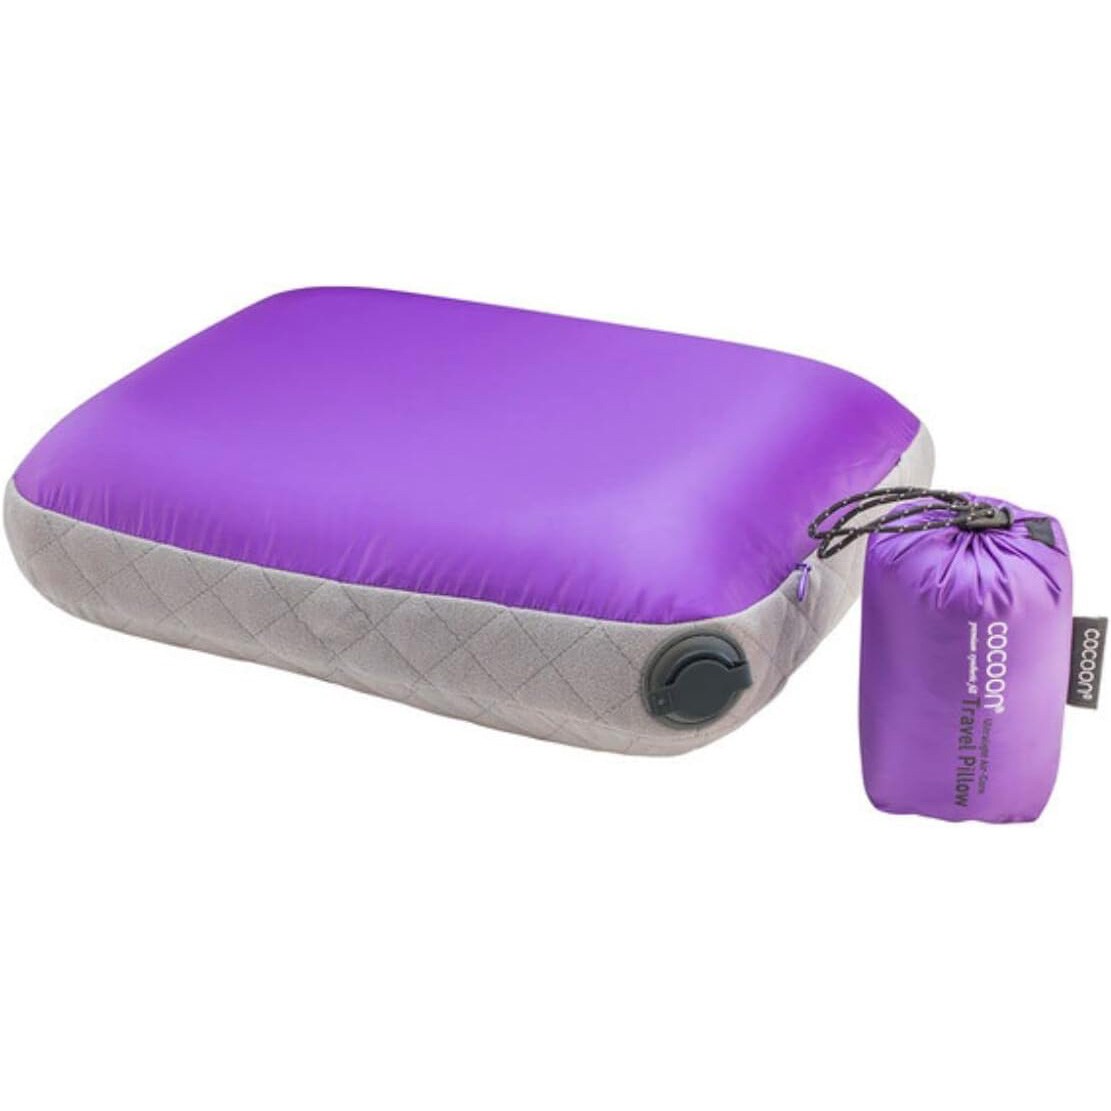 Cocoon Air Core Pillow Ultralight standard